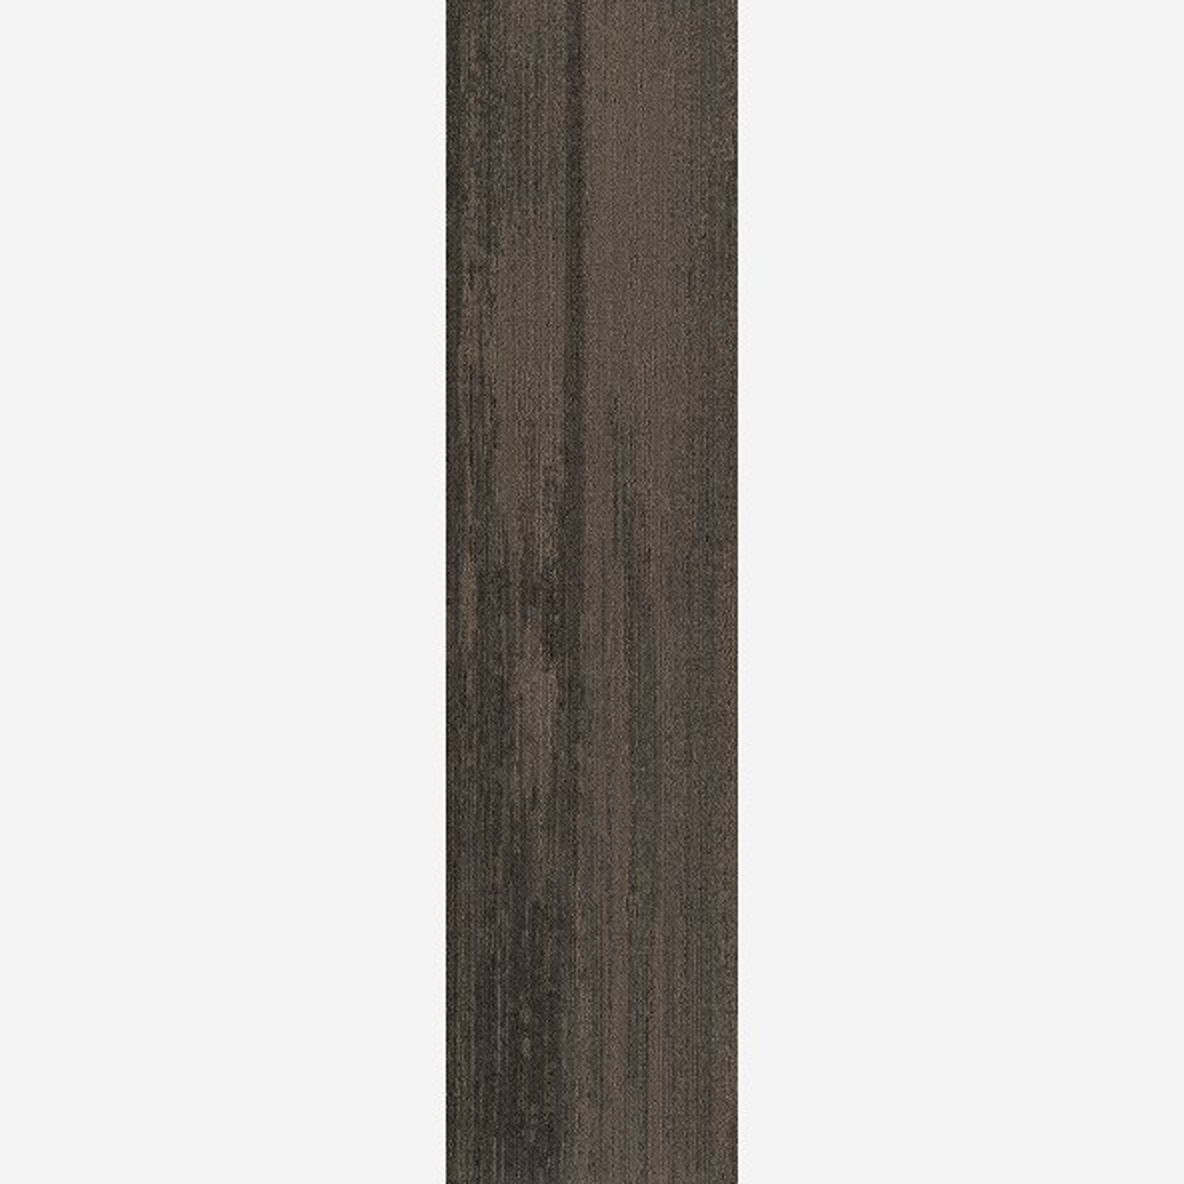 Mocha Dark Full Tile Ingrained Commercial Carpet Plank Neutral .28 Inch x 25 cm x 1 Meter Per Plank